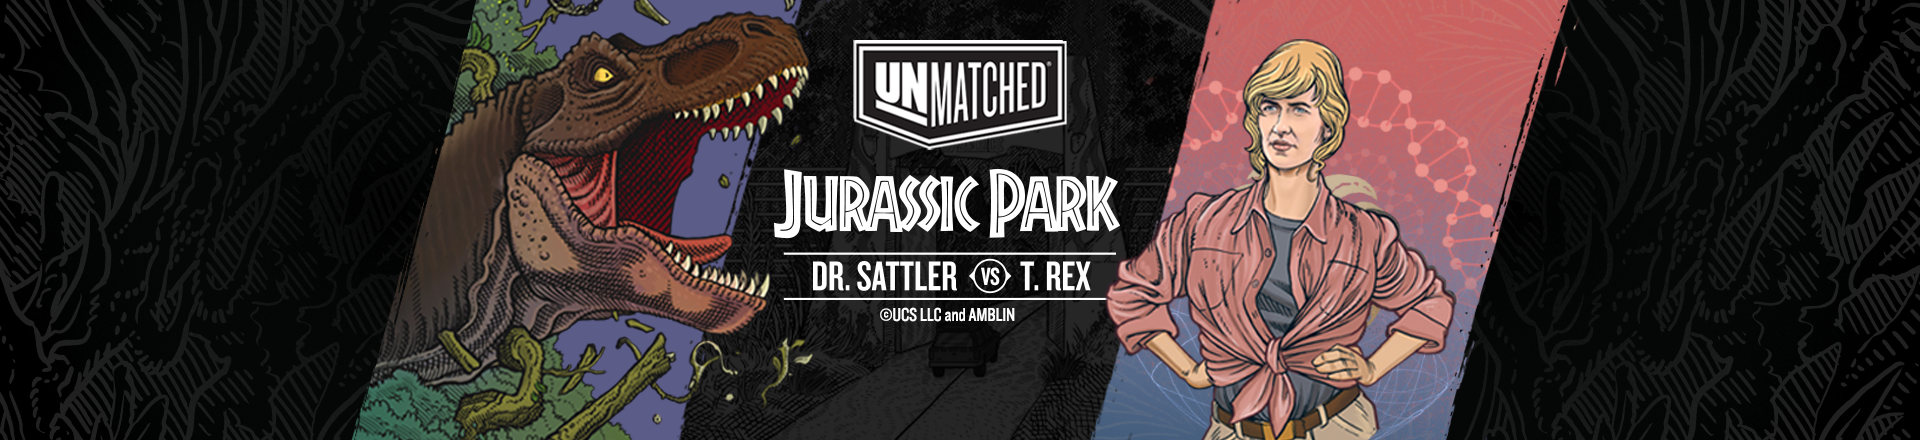 Unmatched Jurassic Park DR. SATTLER VS T. REX